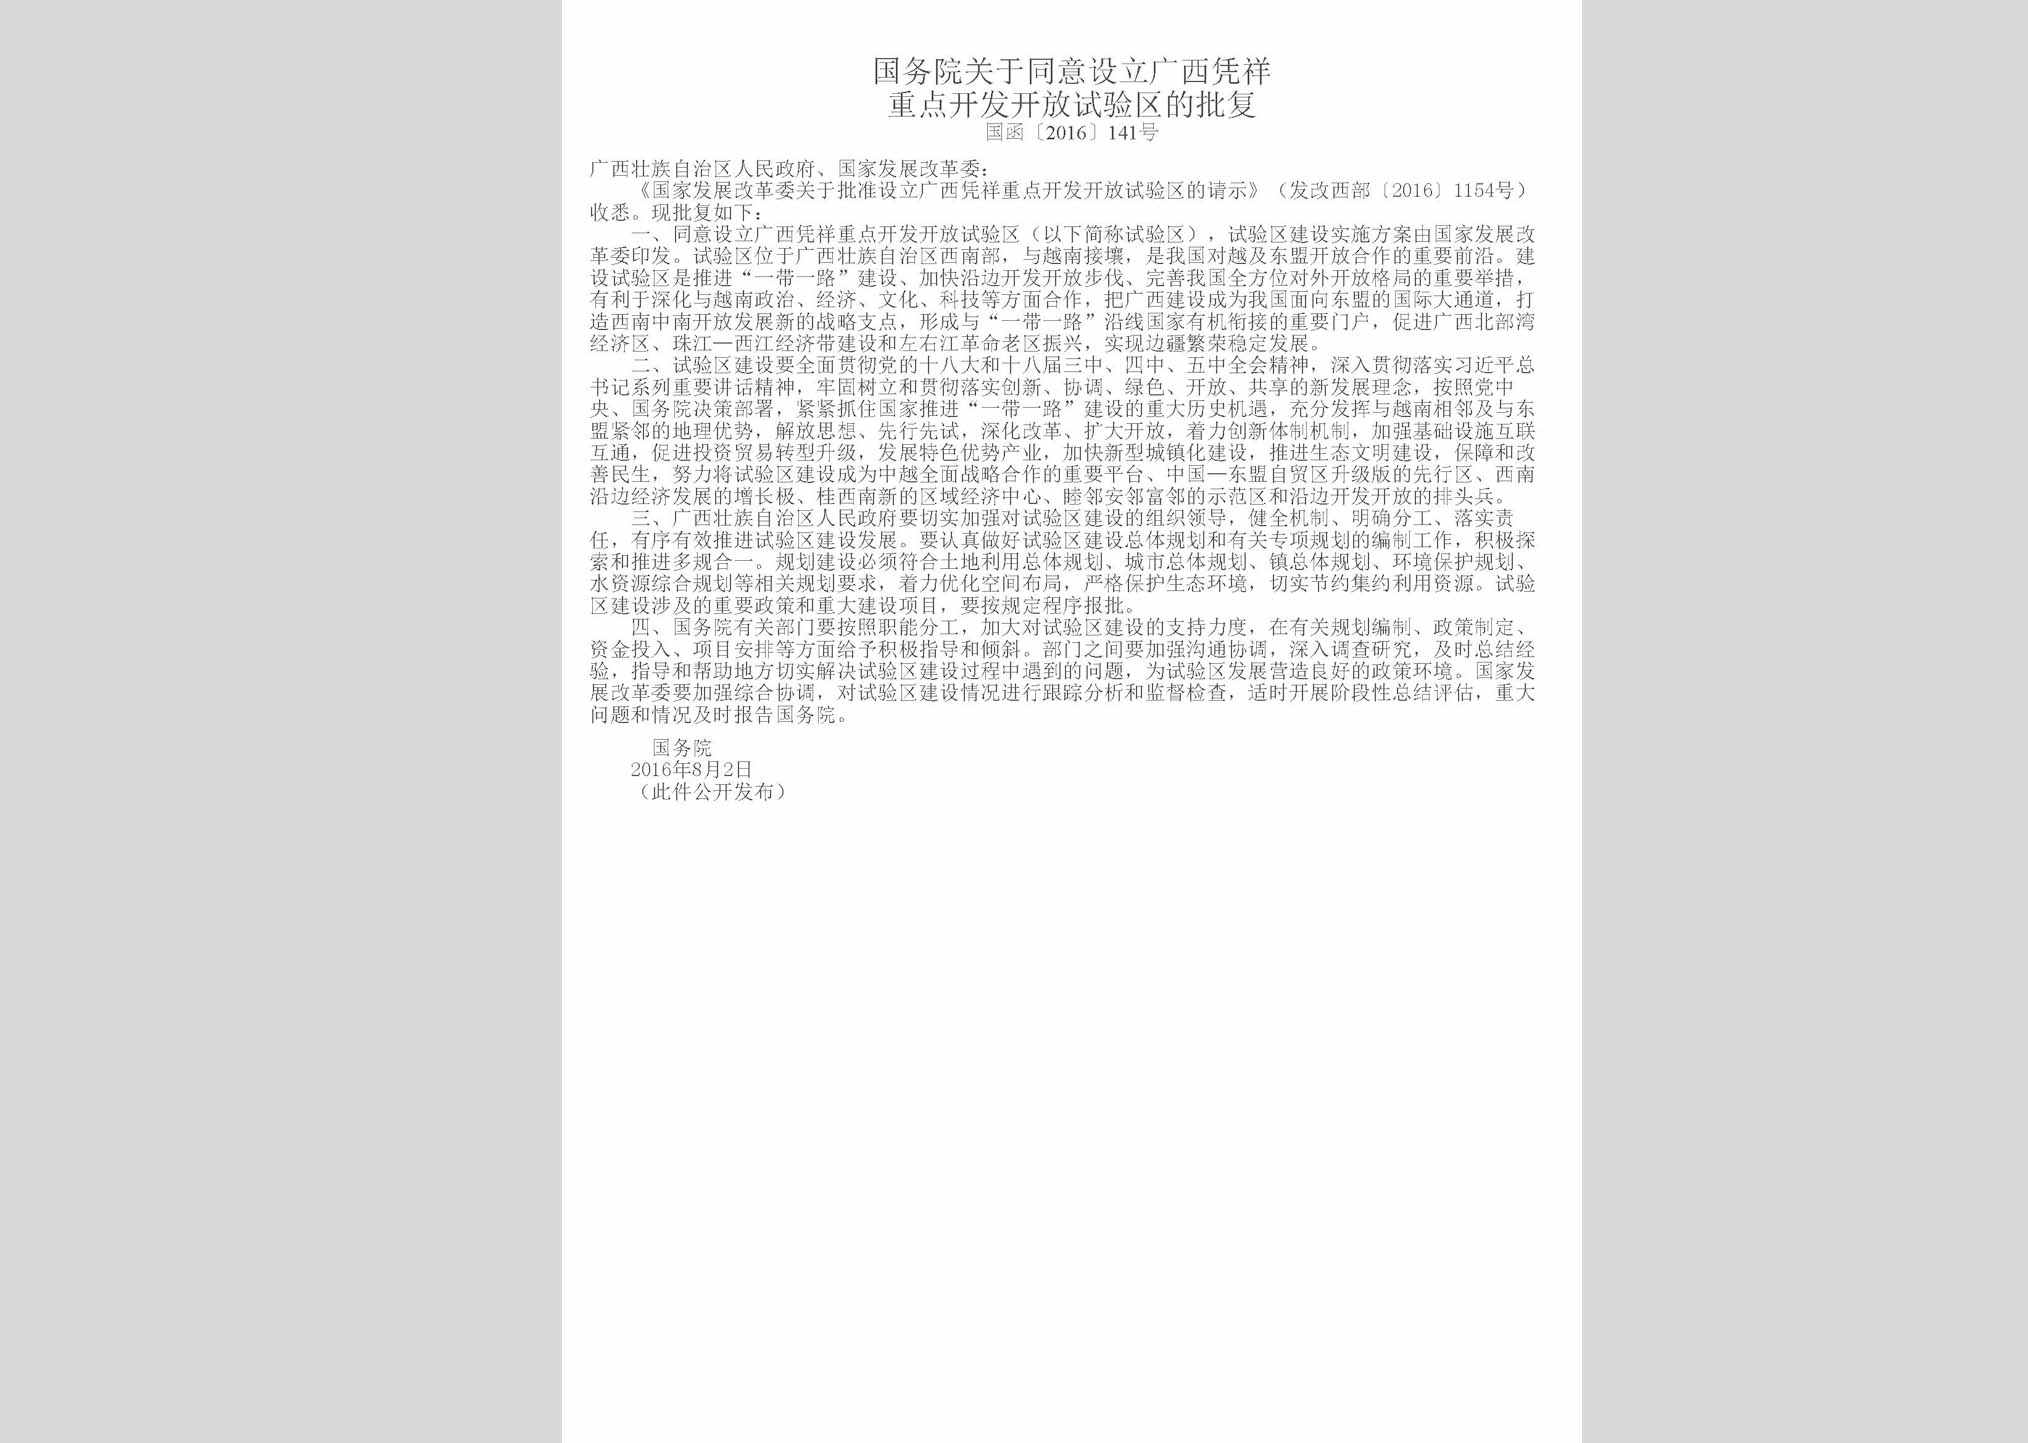 国函[2016]141号：国务院关于同意设立广西凭祥重点开发开放试验区的批复